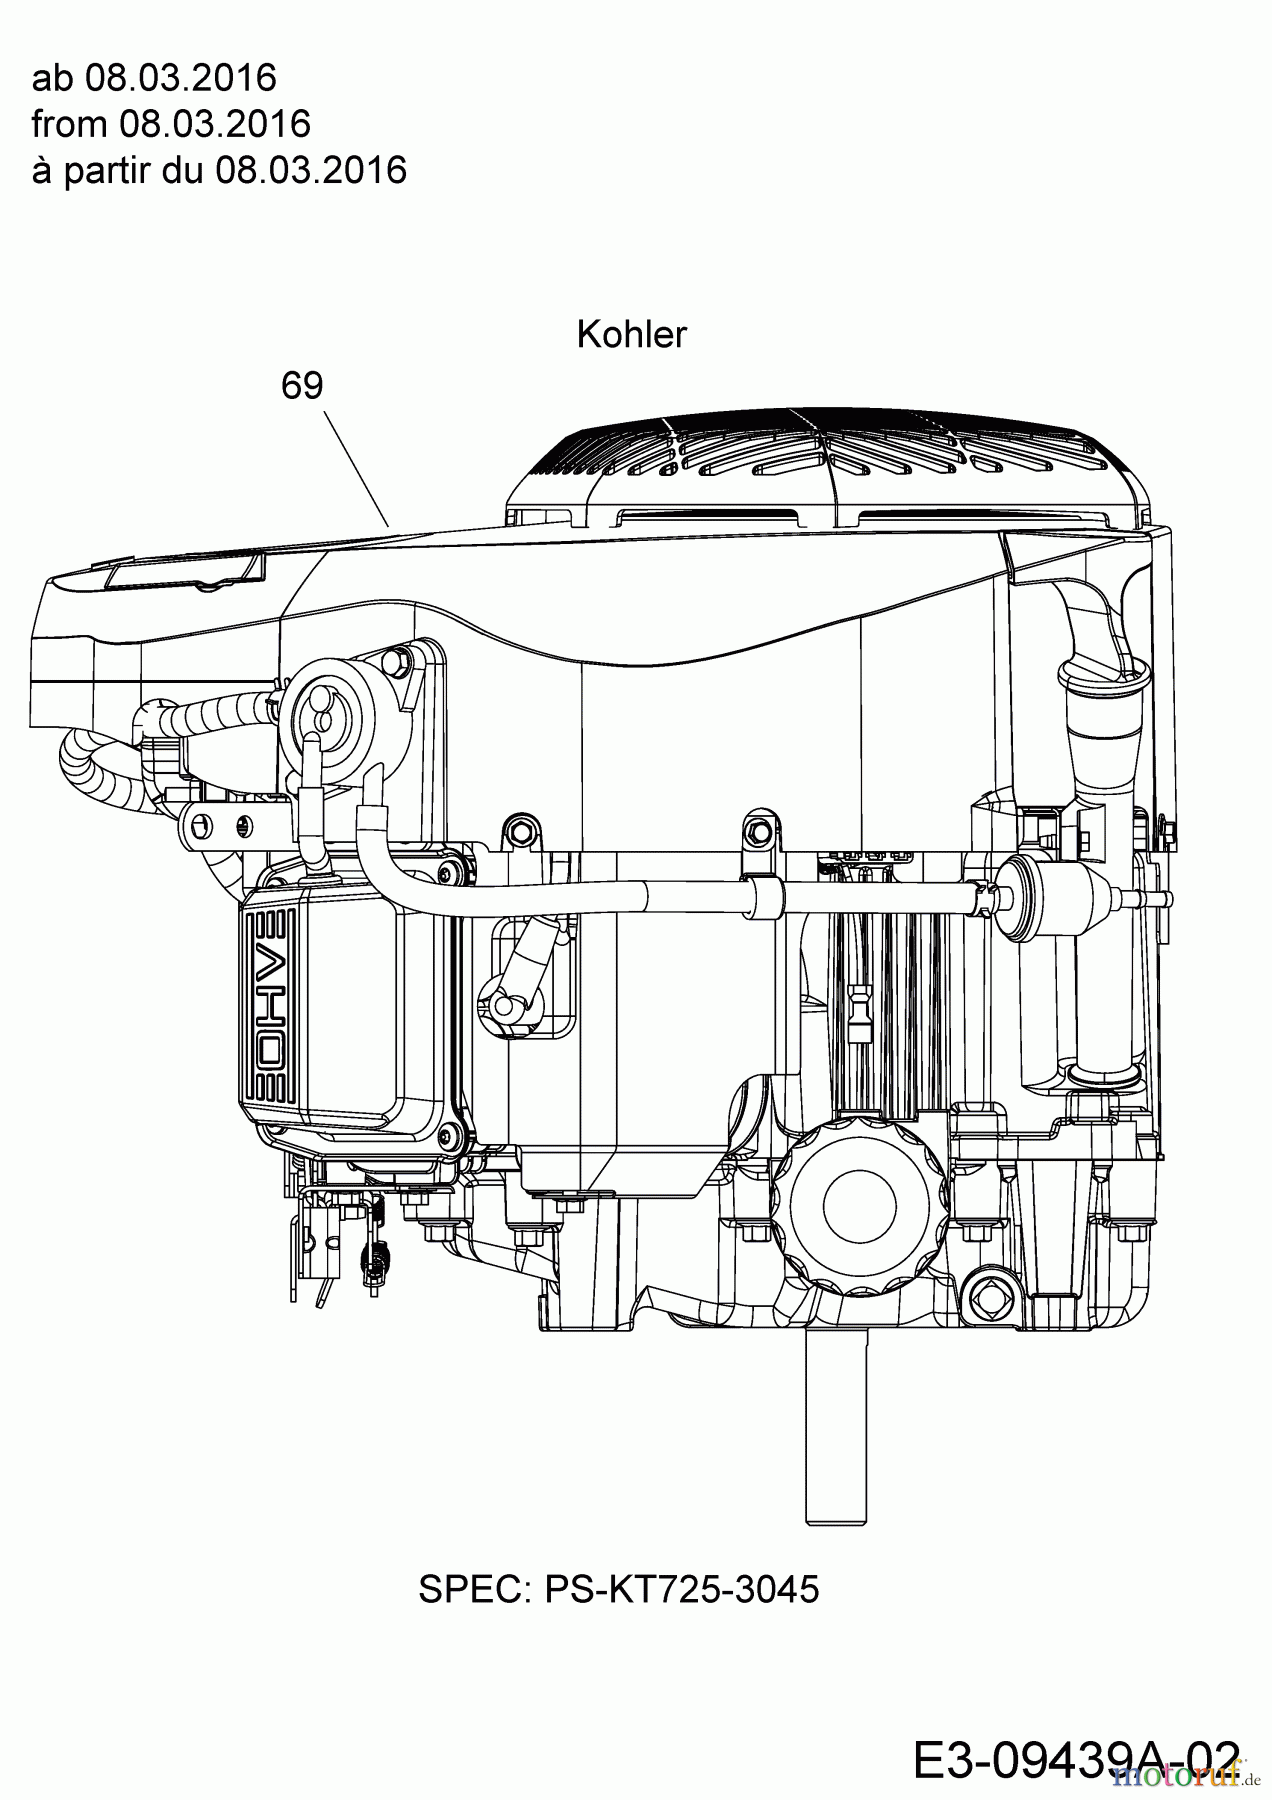  Massey Ferguson Rasentraktoren MF 41-22 RH 13HP91GN695  (2016) Motor Kohler ab 08.03.2016